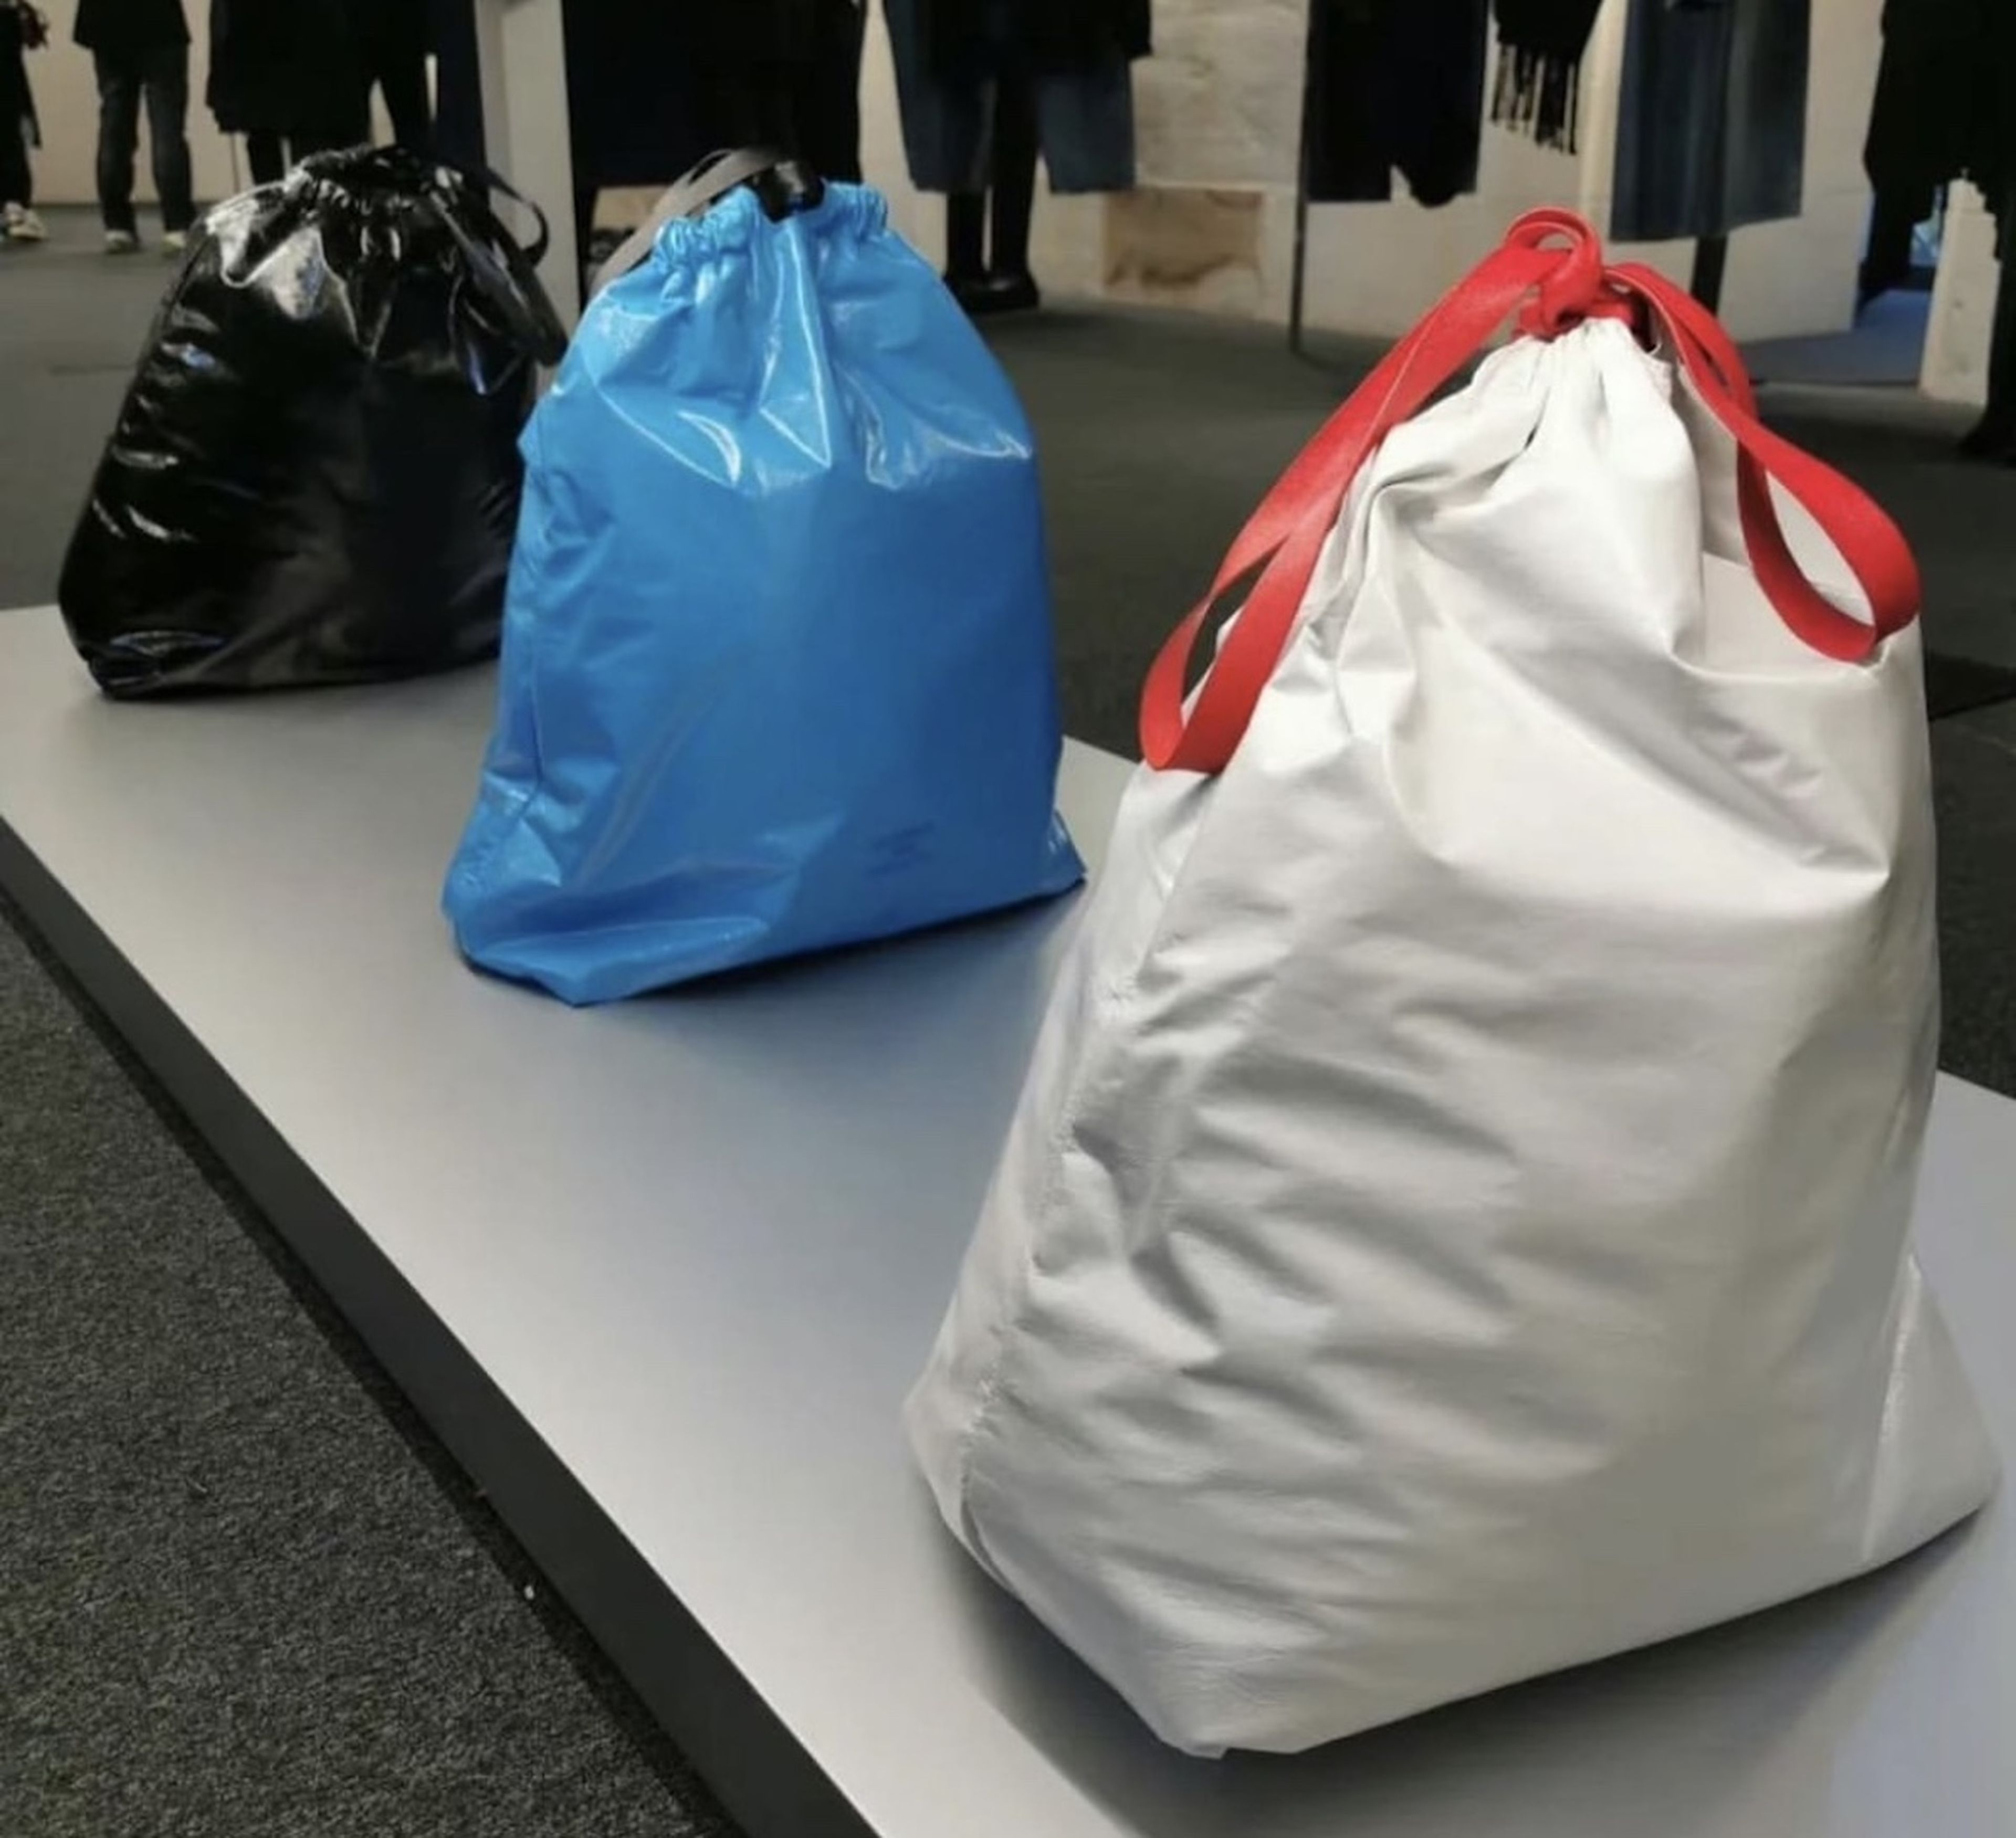 Balenciaga vende un bolso que imita una bolsa de basura por 1.750 euros